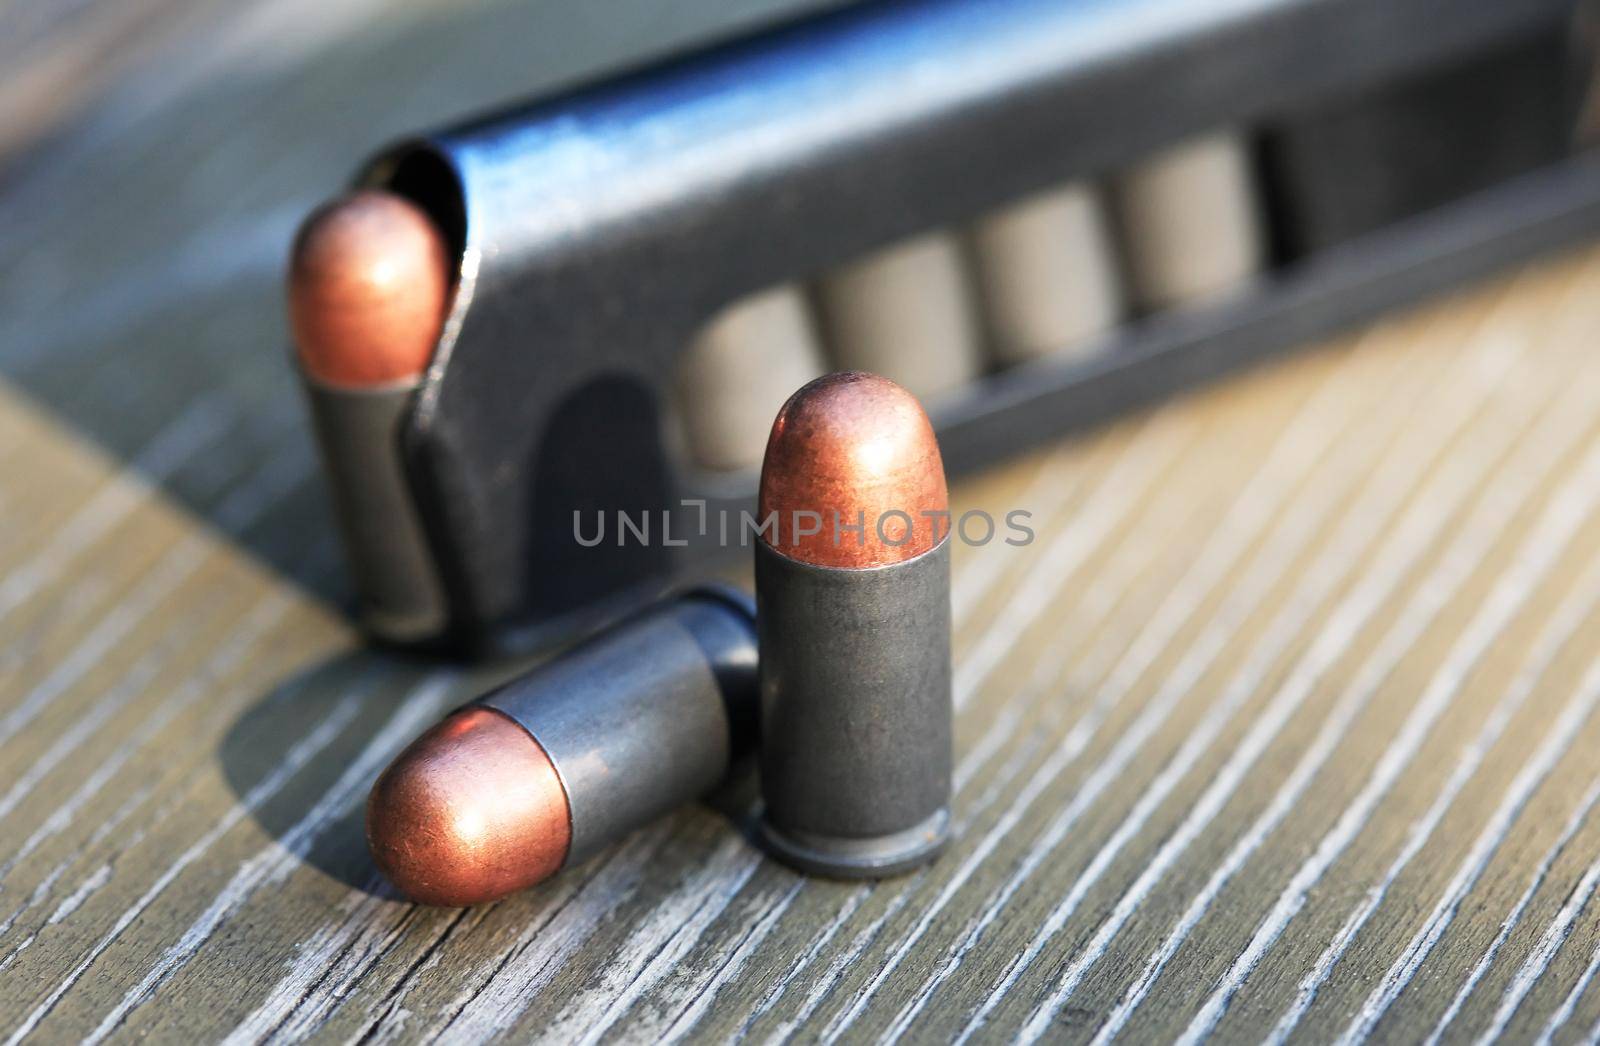 Pistol Cartridges On Wood by kvkirillov